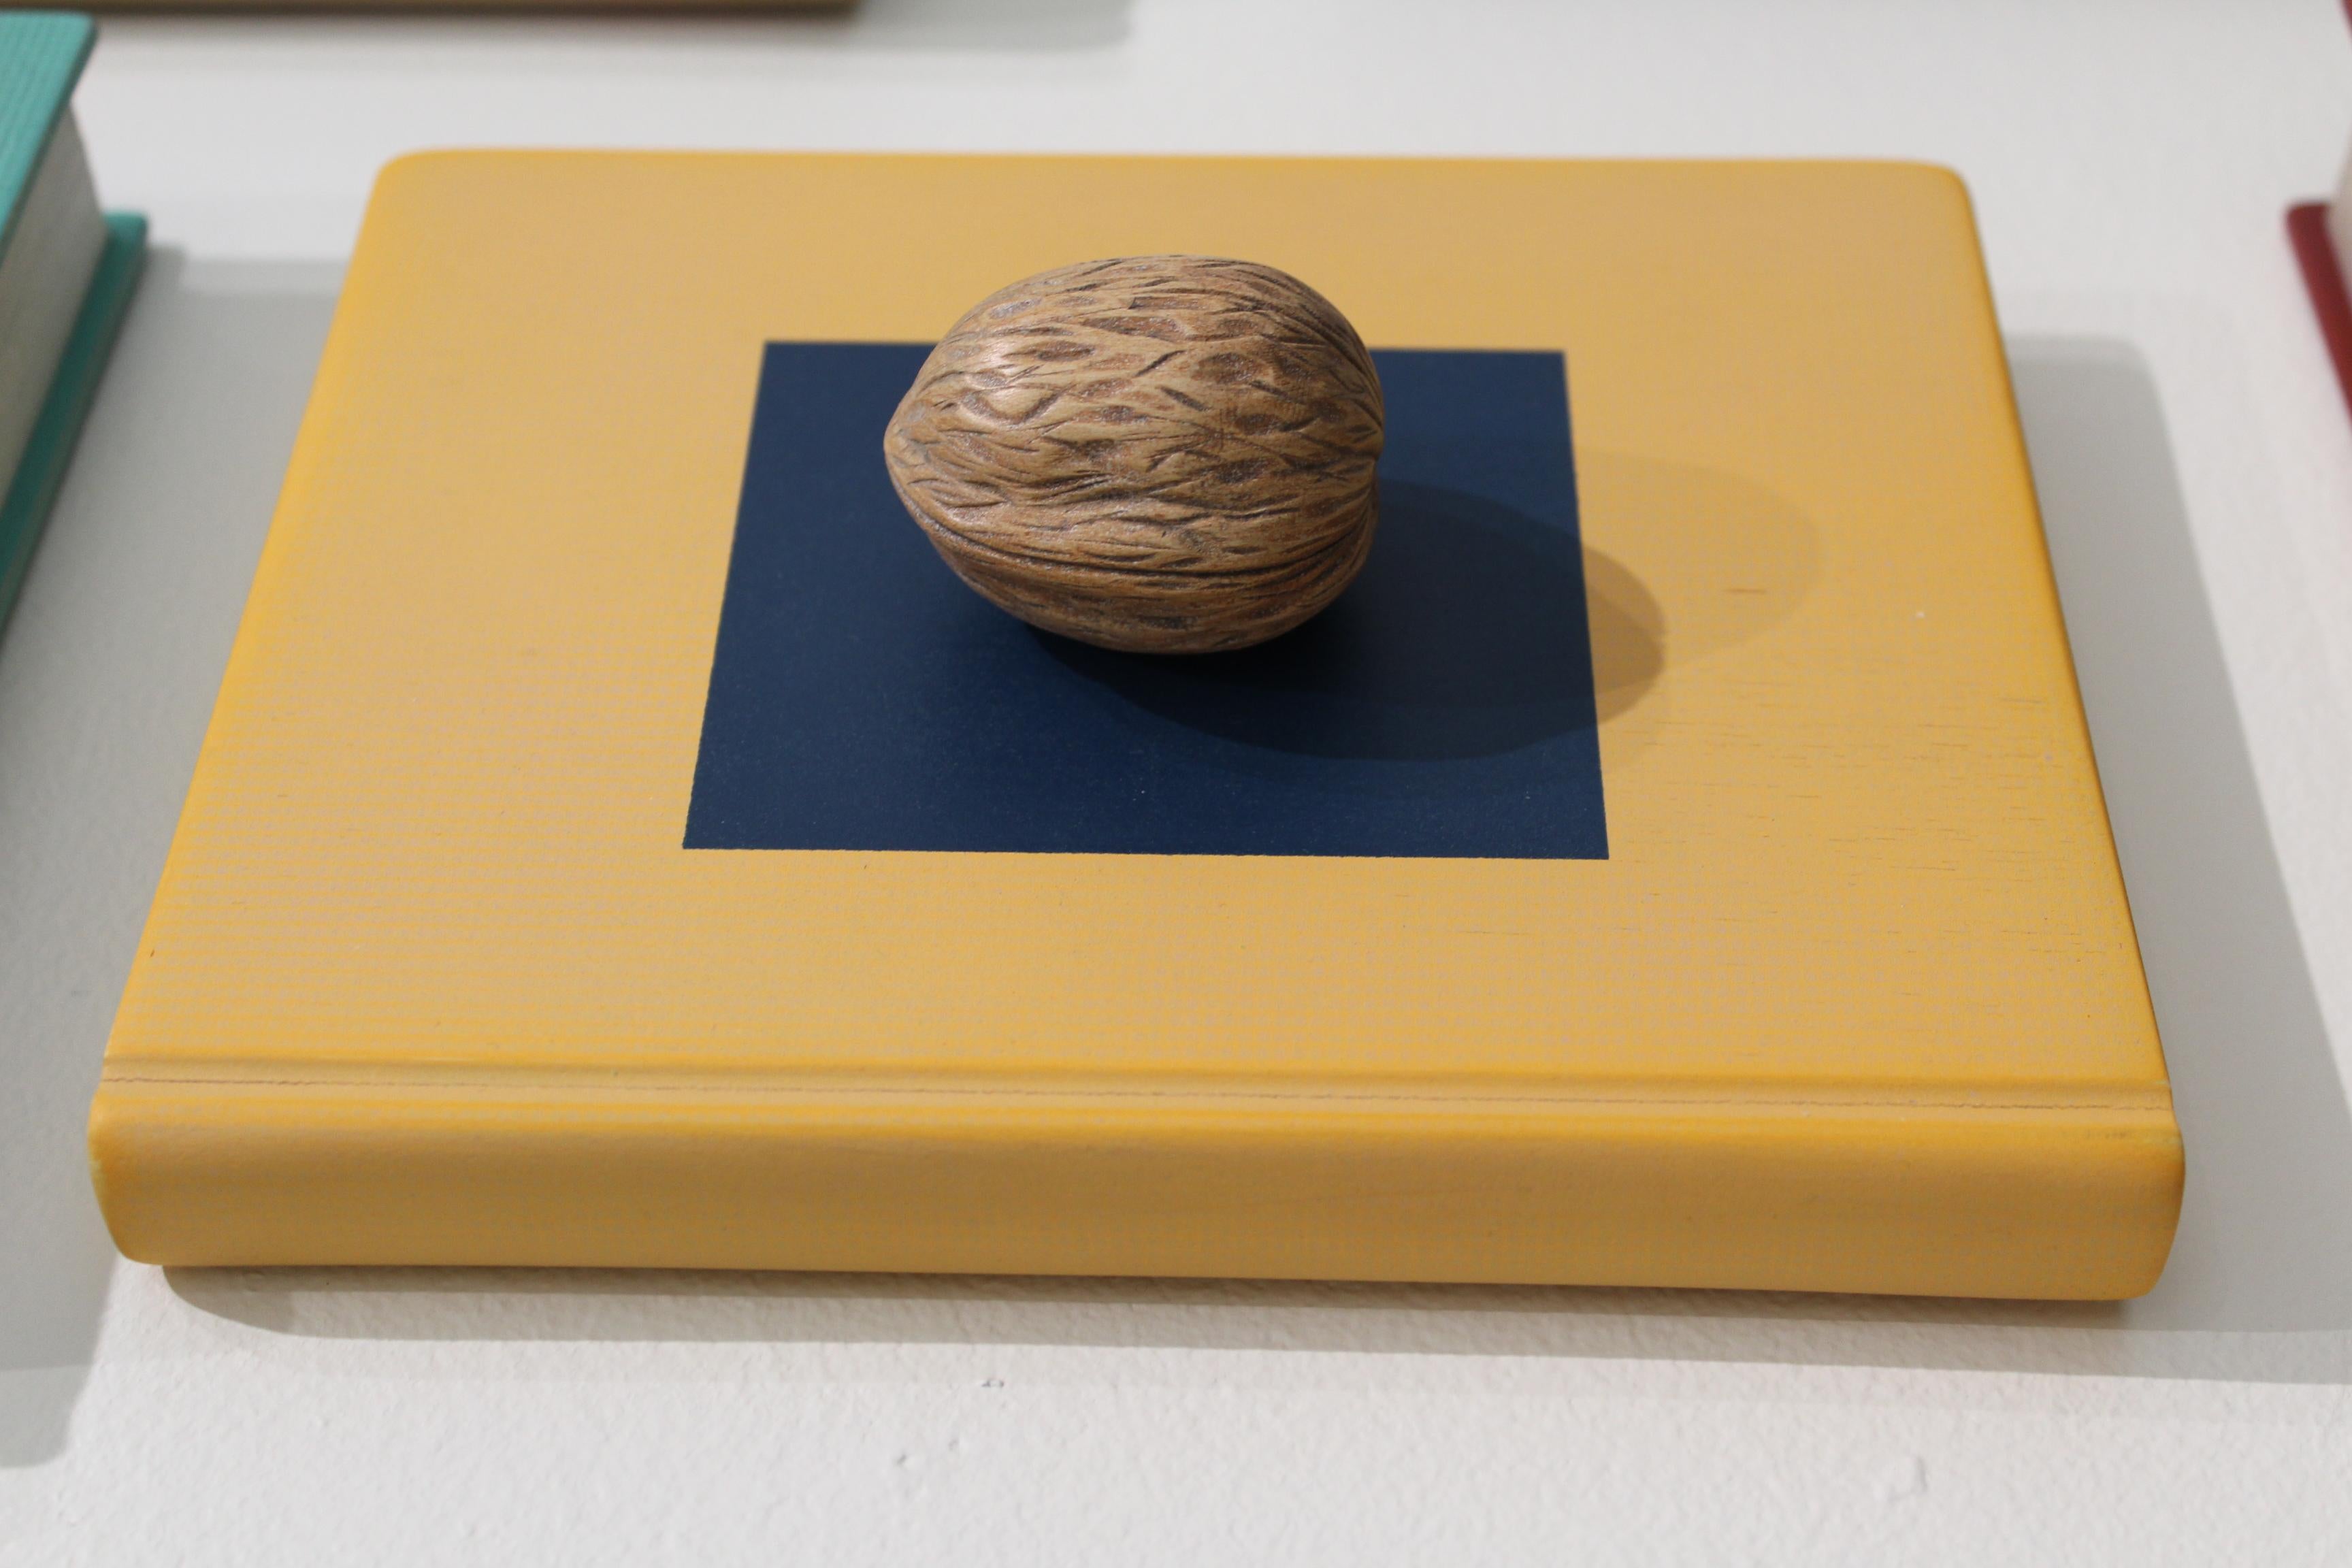 Illegible & Inedible (Books You Can't Read and Food You Can't Eat) ist eine neue Ausstellung mit Werken des Bildhauers Sean O'Meallie. Diese Serie von Skulpturen umfasst eine Wand aus Büchern und eine Wand aus Melonen, die alle aus Holz gefertigt